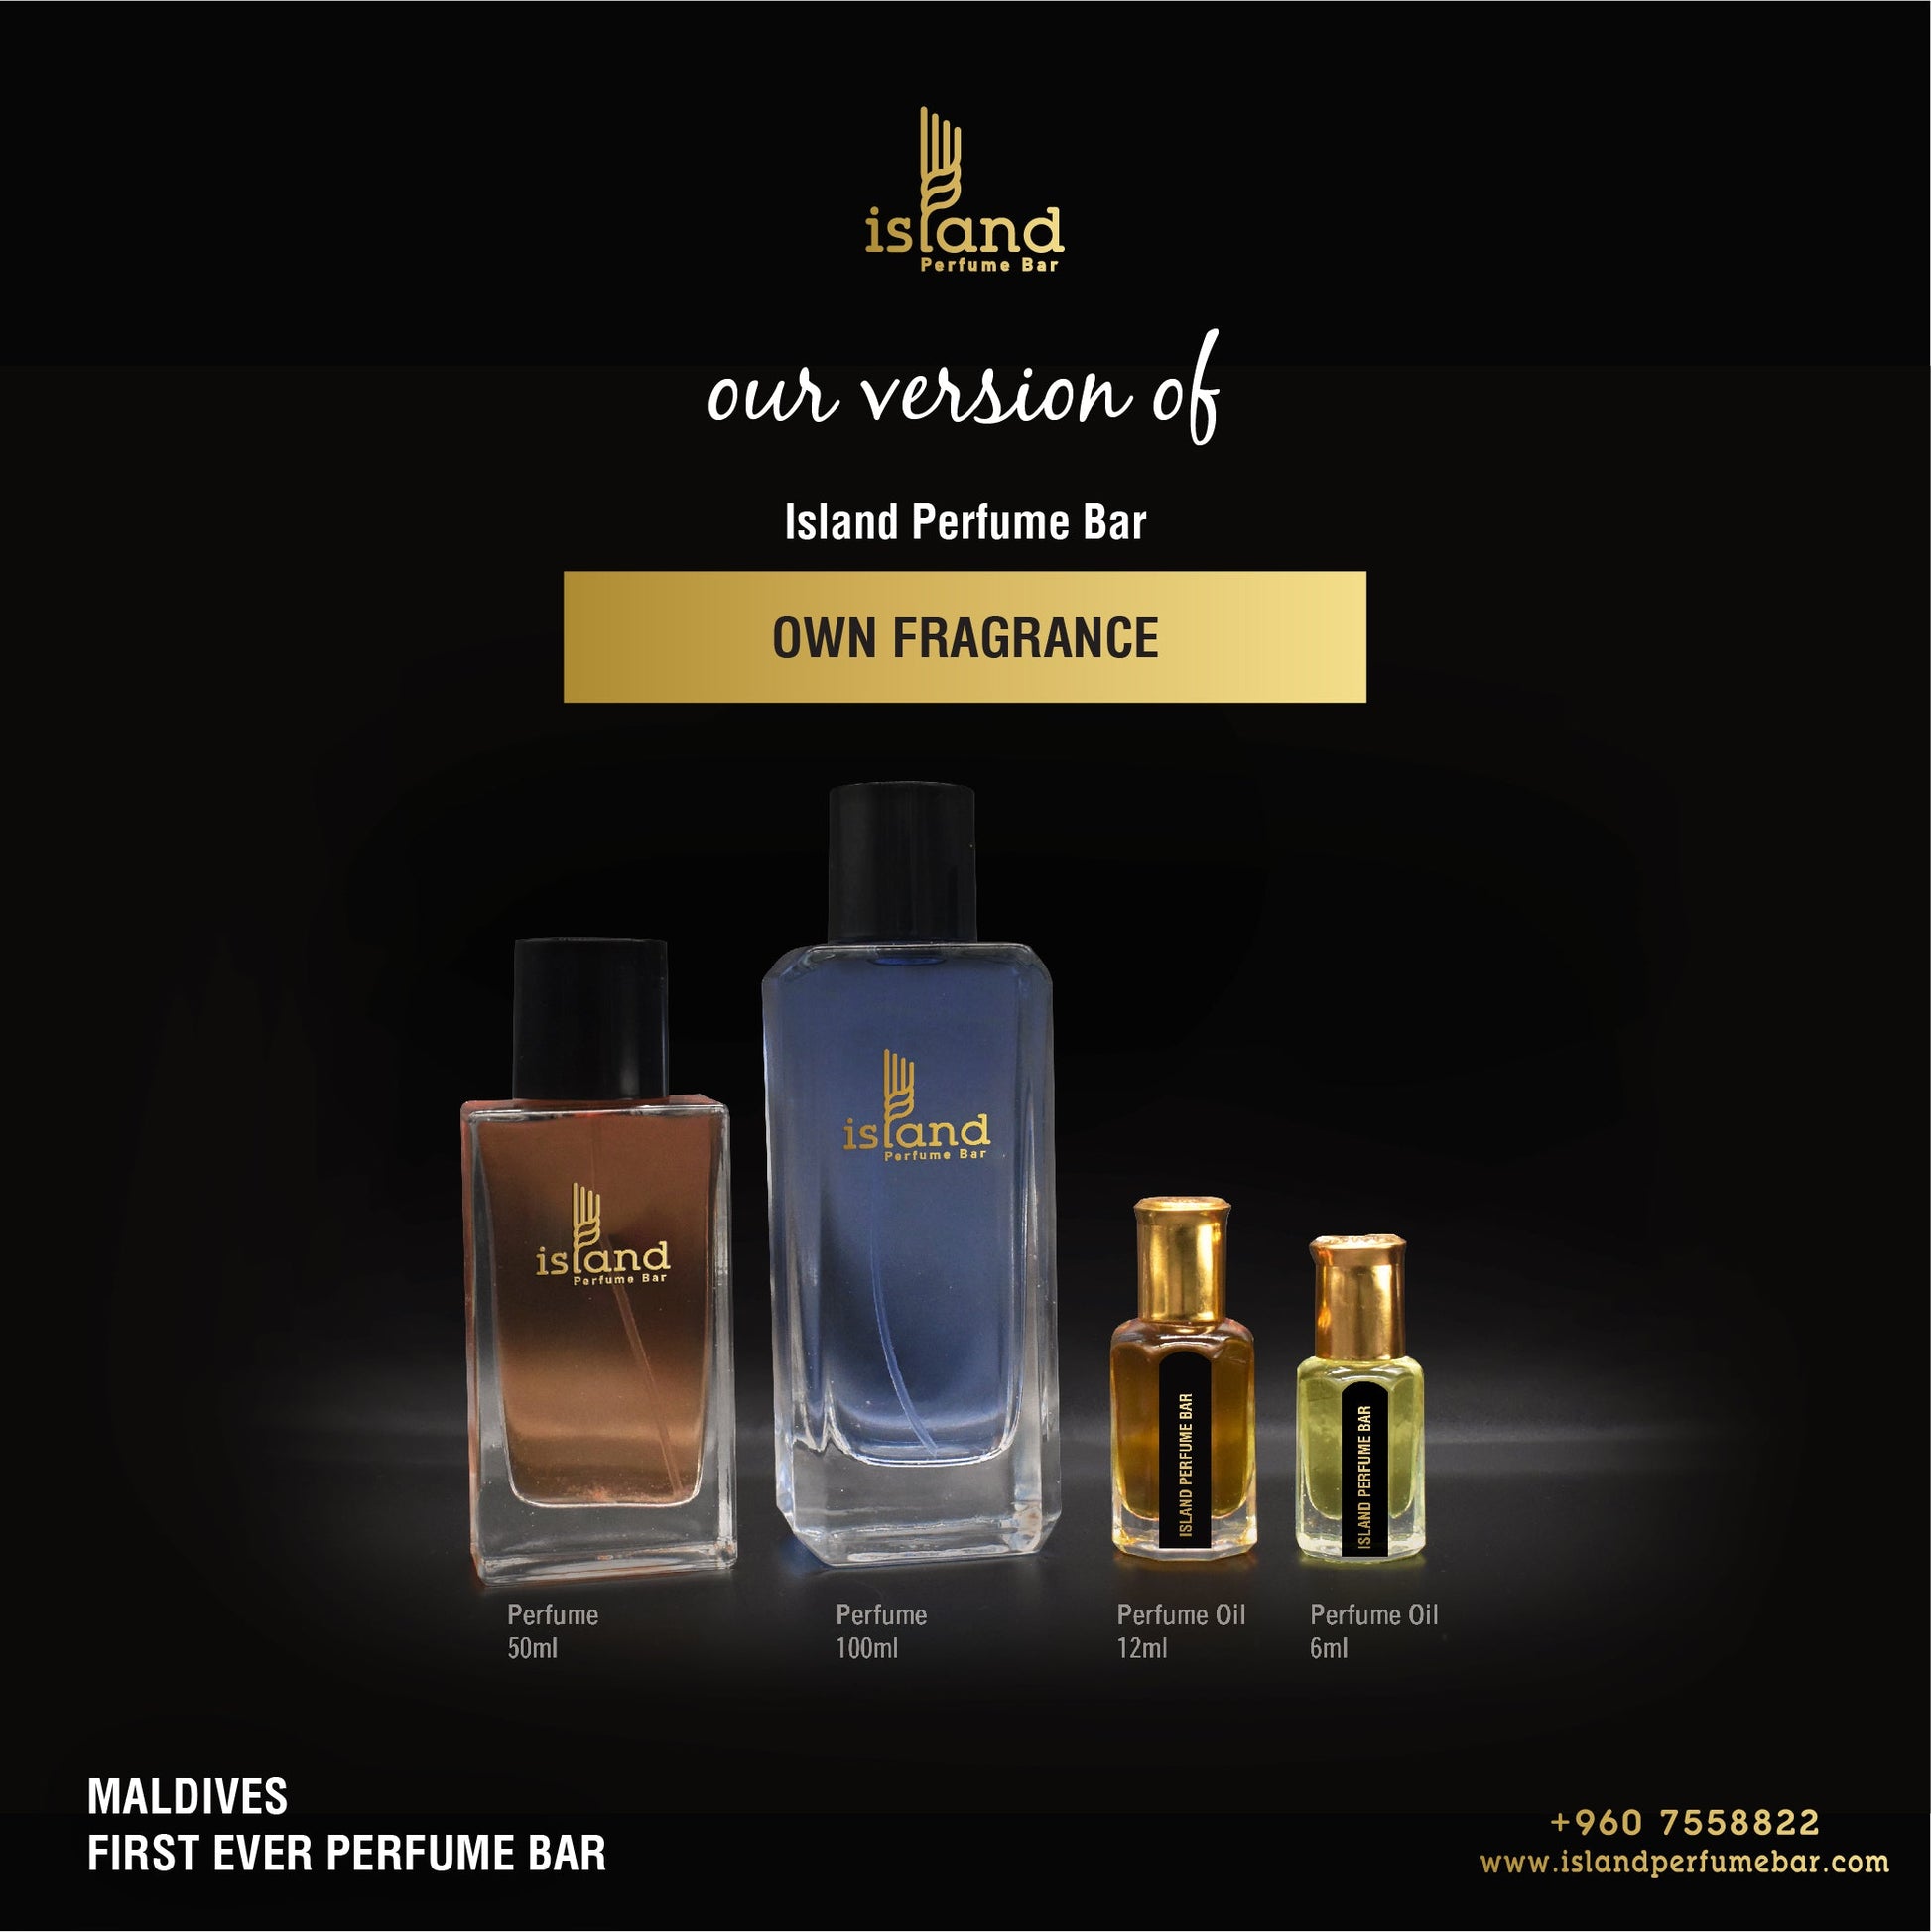 Louis Vuitton - Imagination - Oil Perfumery